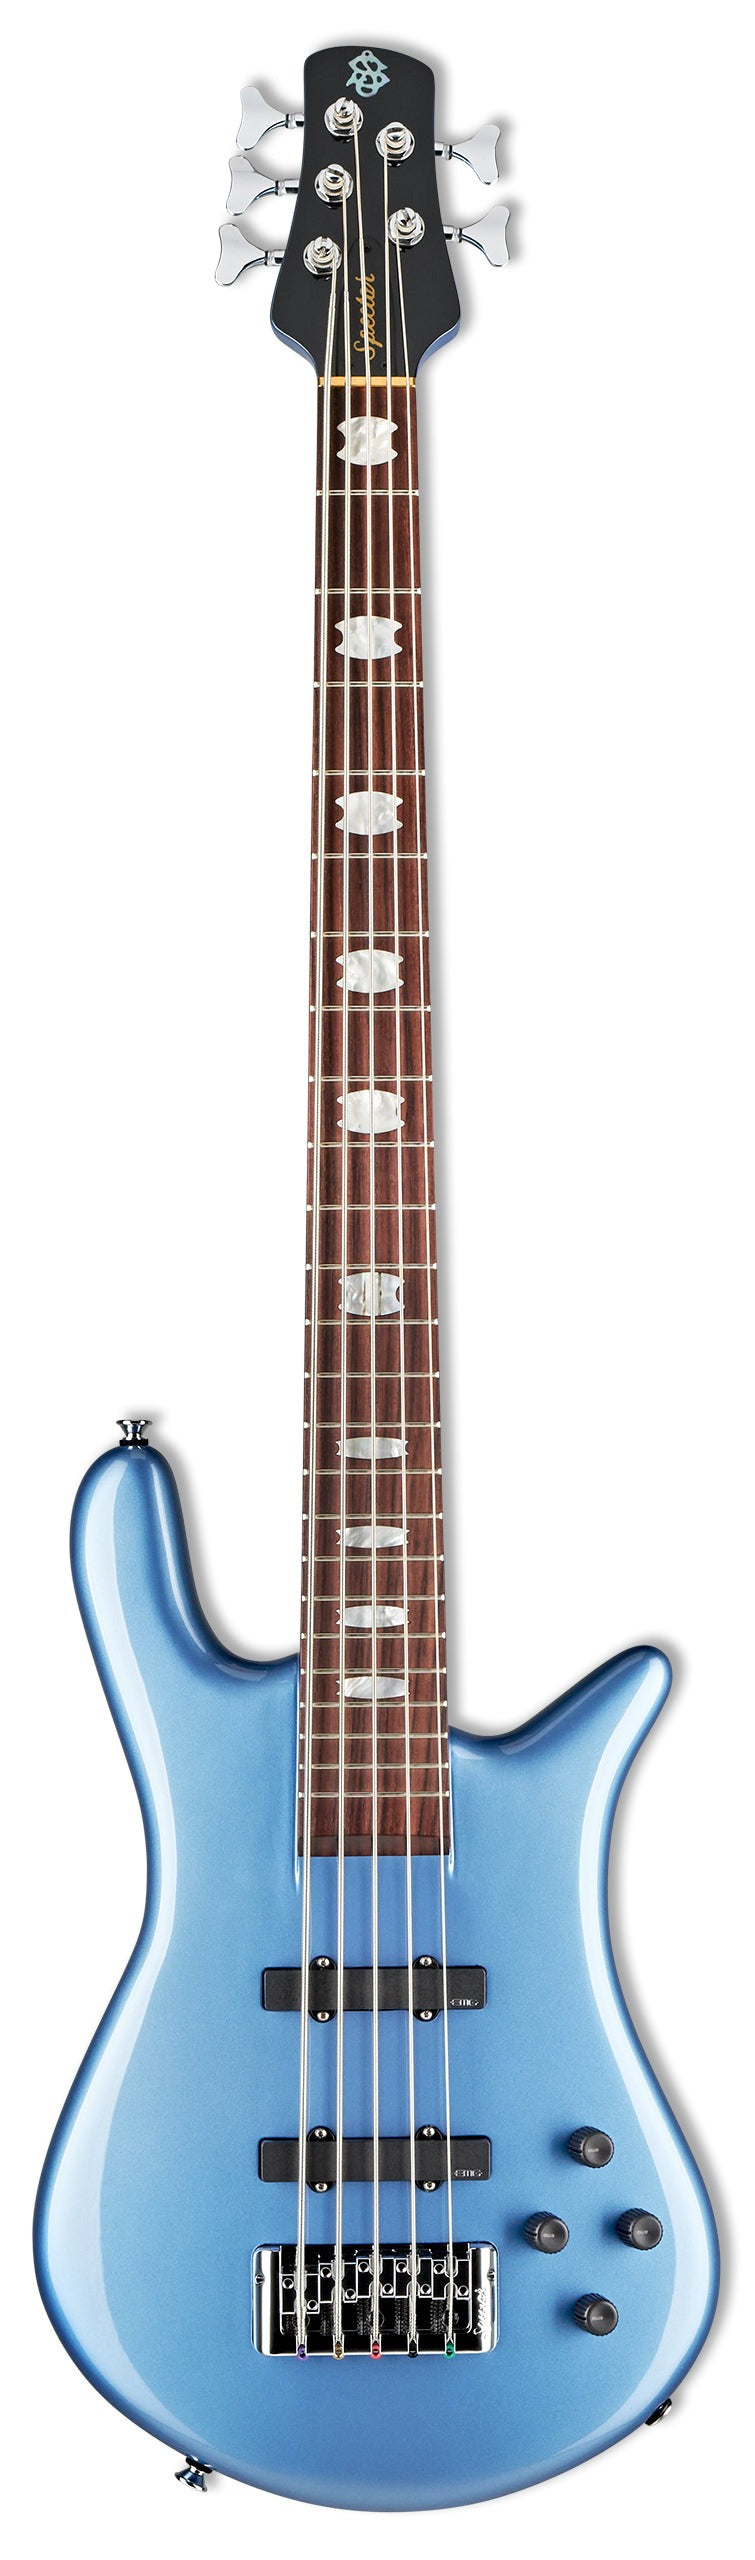 Spector EURO 5 CLASSIC 5-String Bass Guitar (Metallic Blue Gloss)